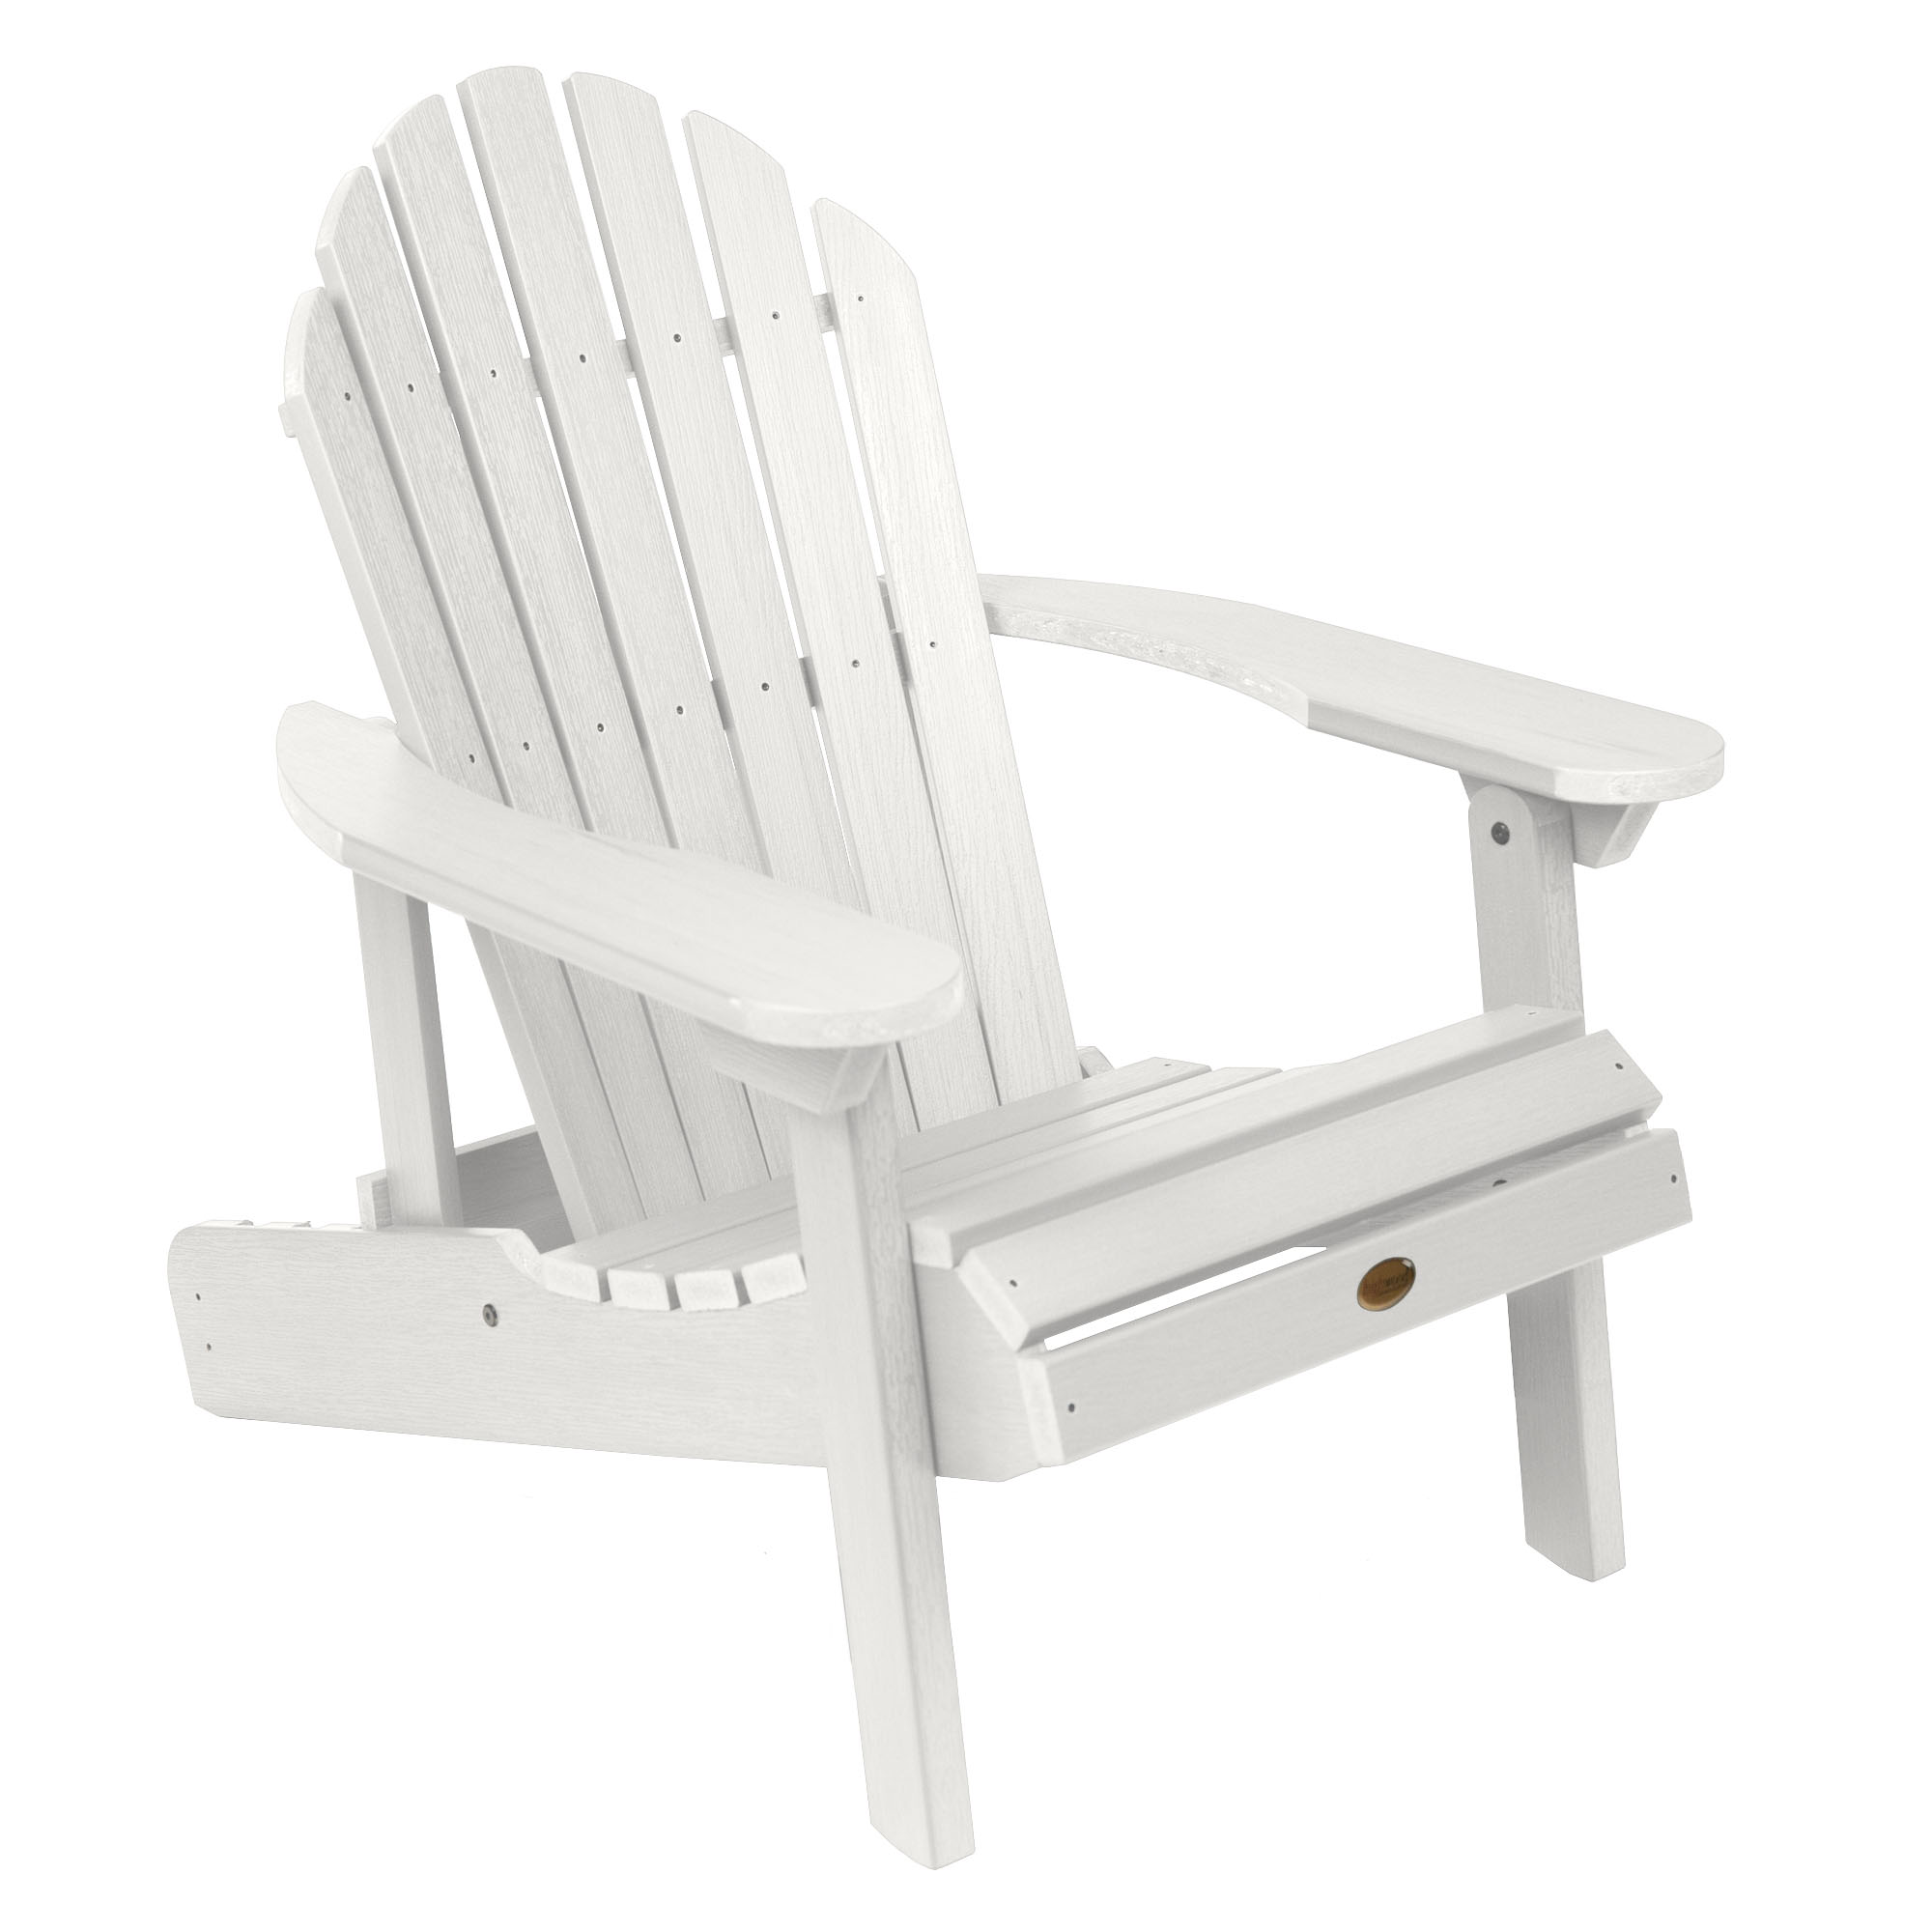 Highwood's Folding & Reclining Hamilton Adirondack Chair - image 1 of 8